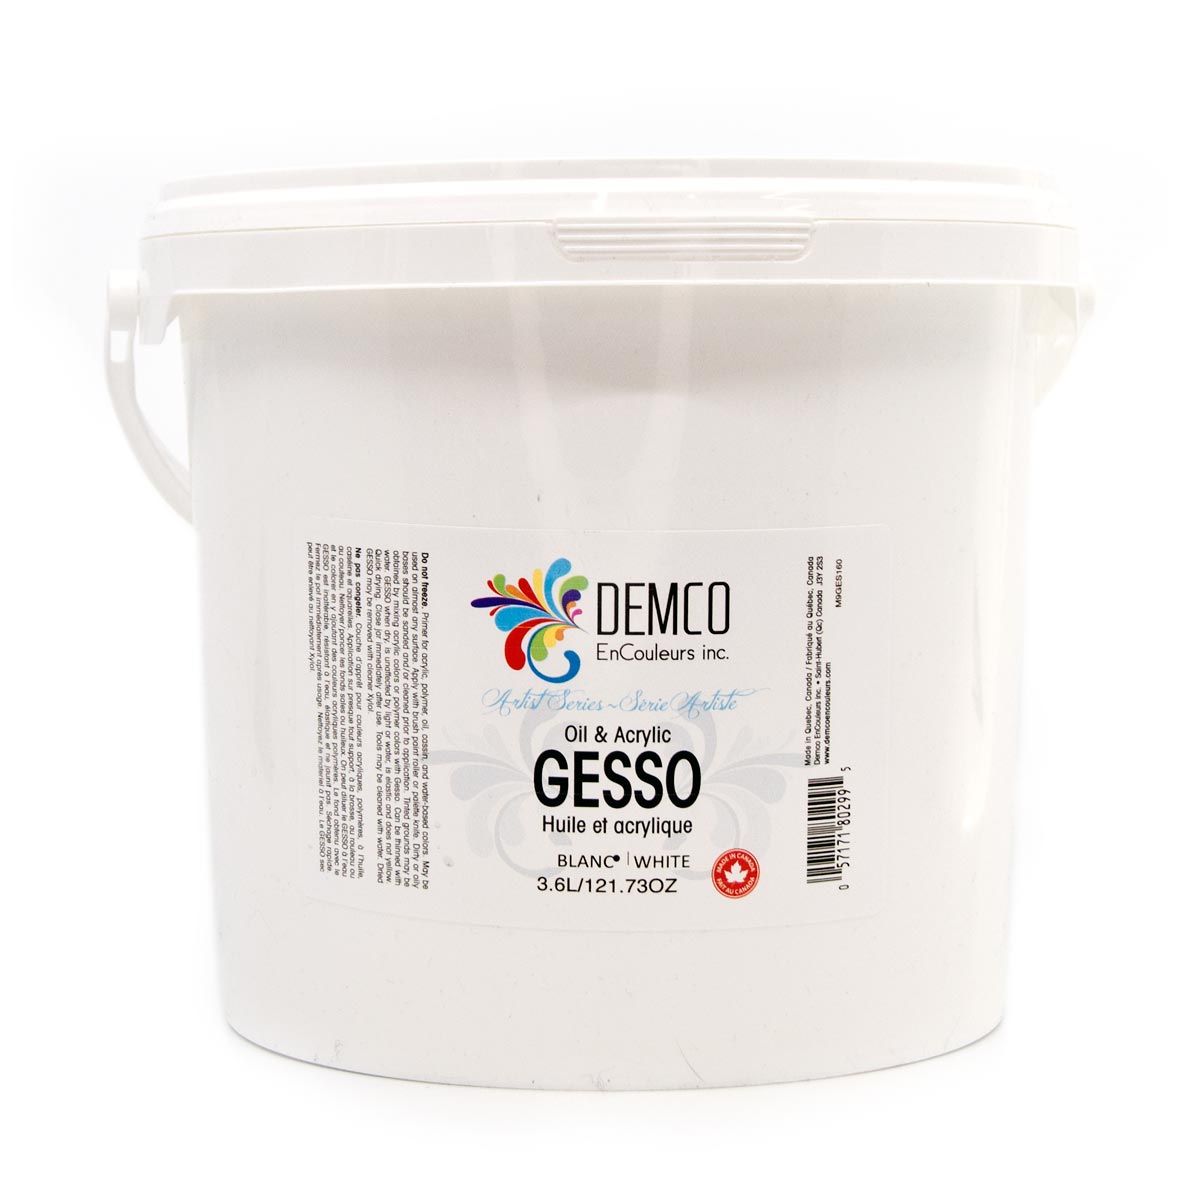 Demco Economy Gesso White - 3.6L (73 oz)